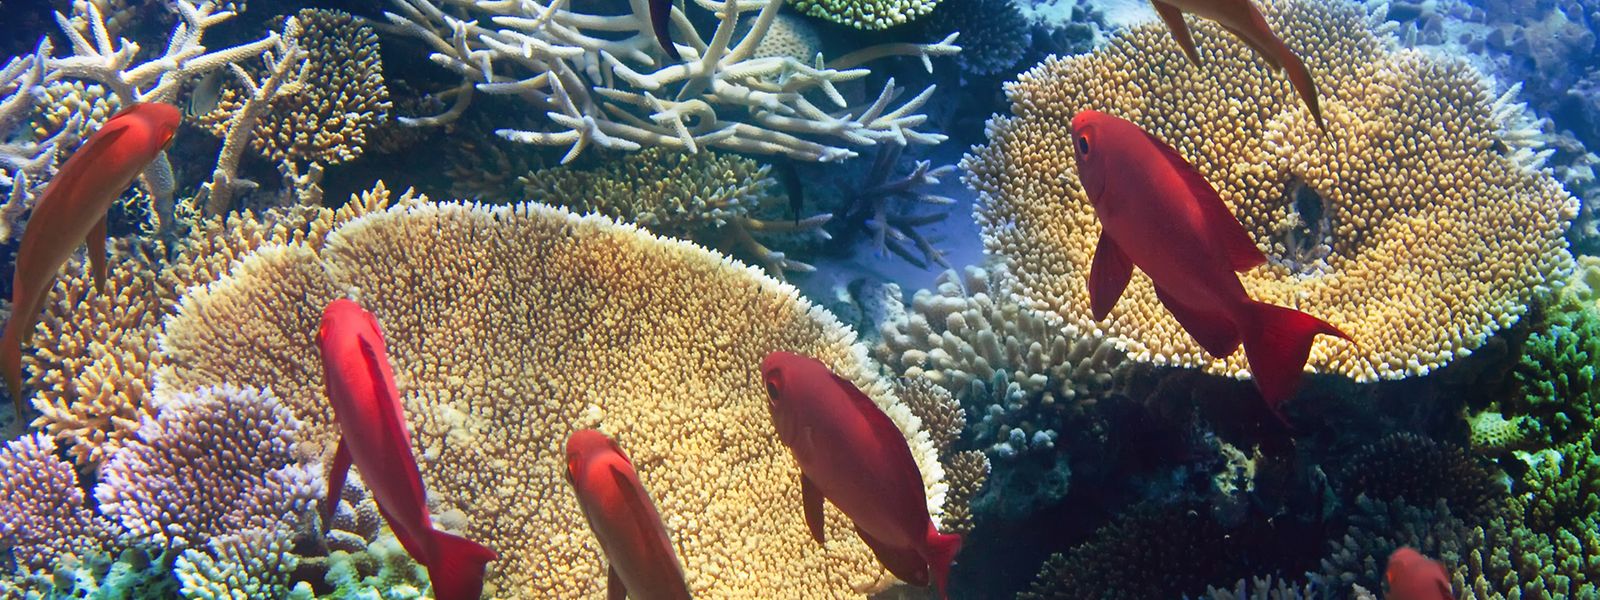 Korallenriffe werden durch verschiedene Faktoren wie etwa den Klimawandel bedroht. Forscher suchen nun nach Lösungen.